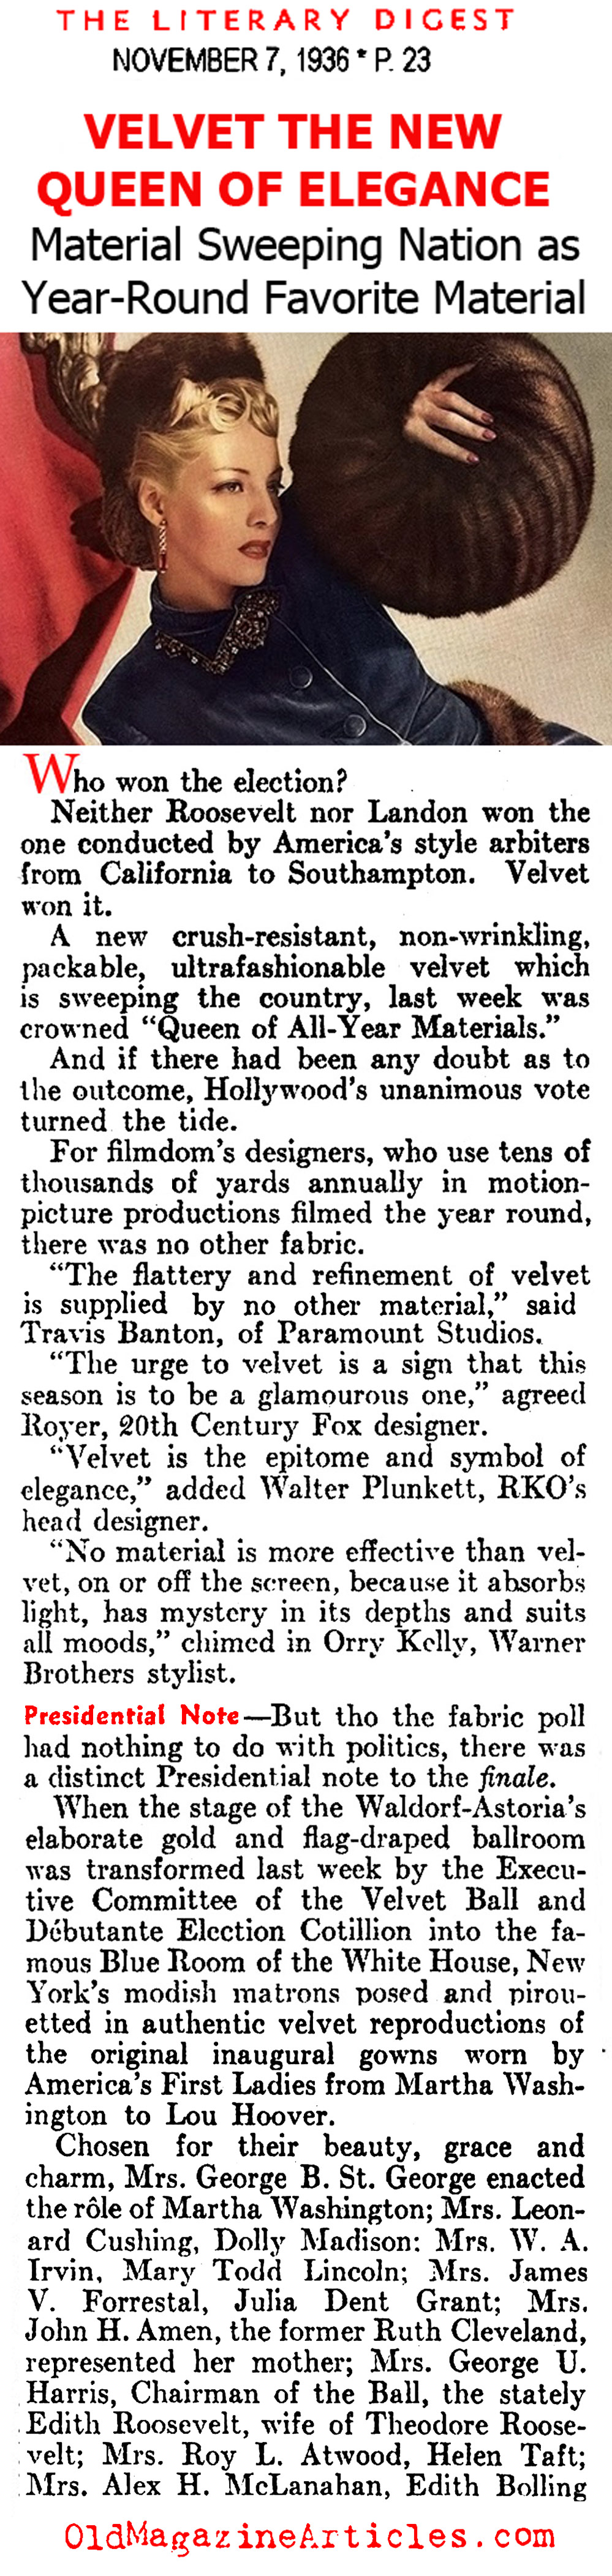 The New Glamour of Velvet (Literary Digest, 1936)